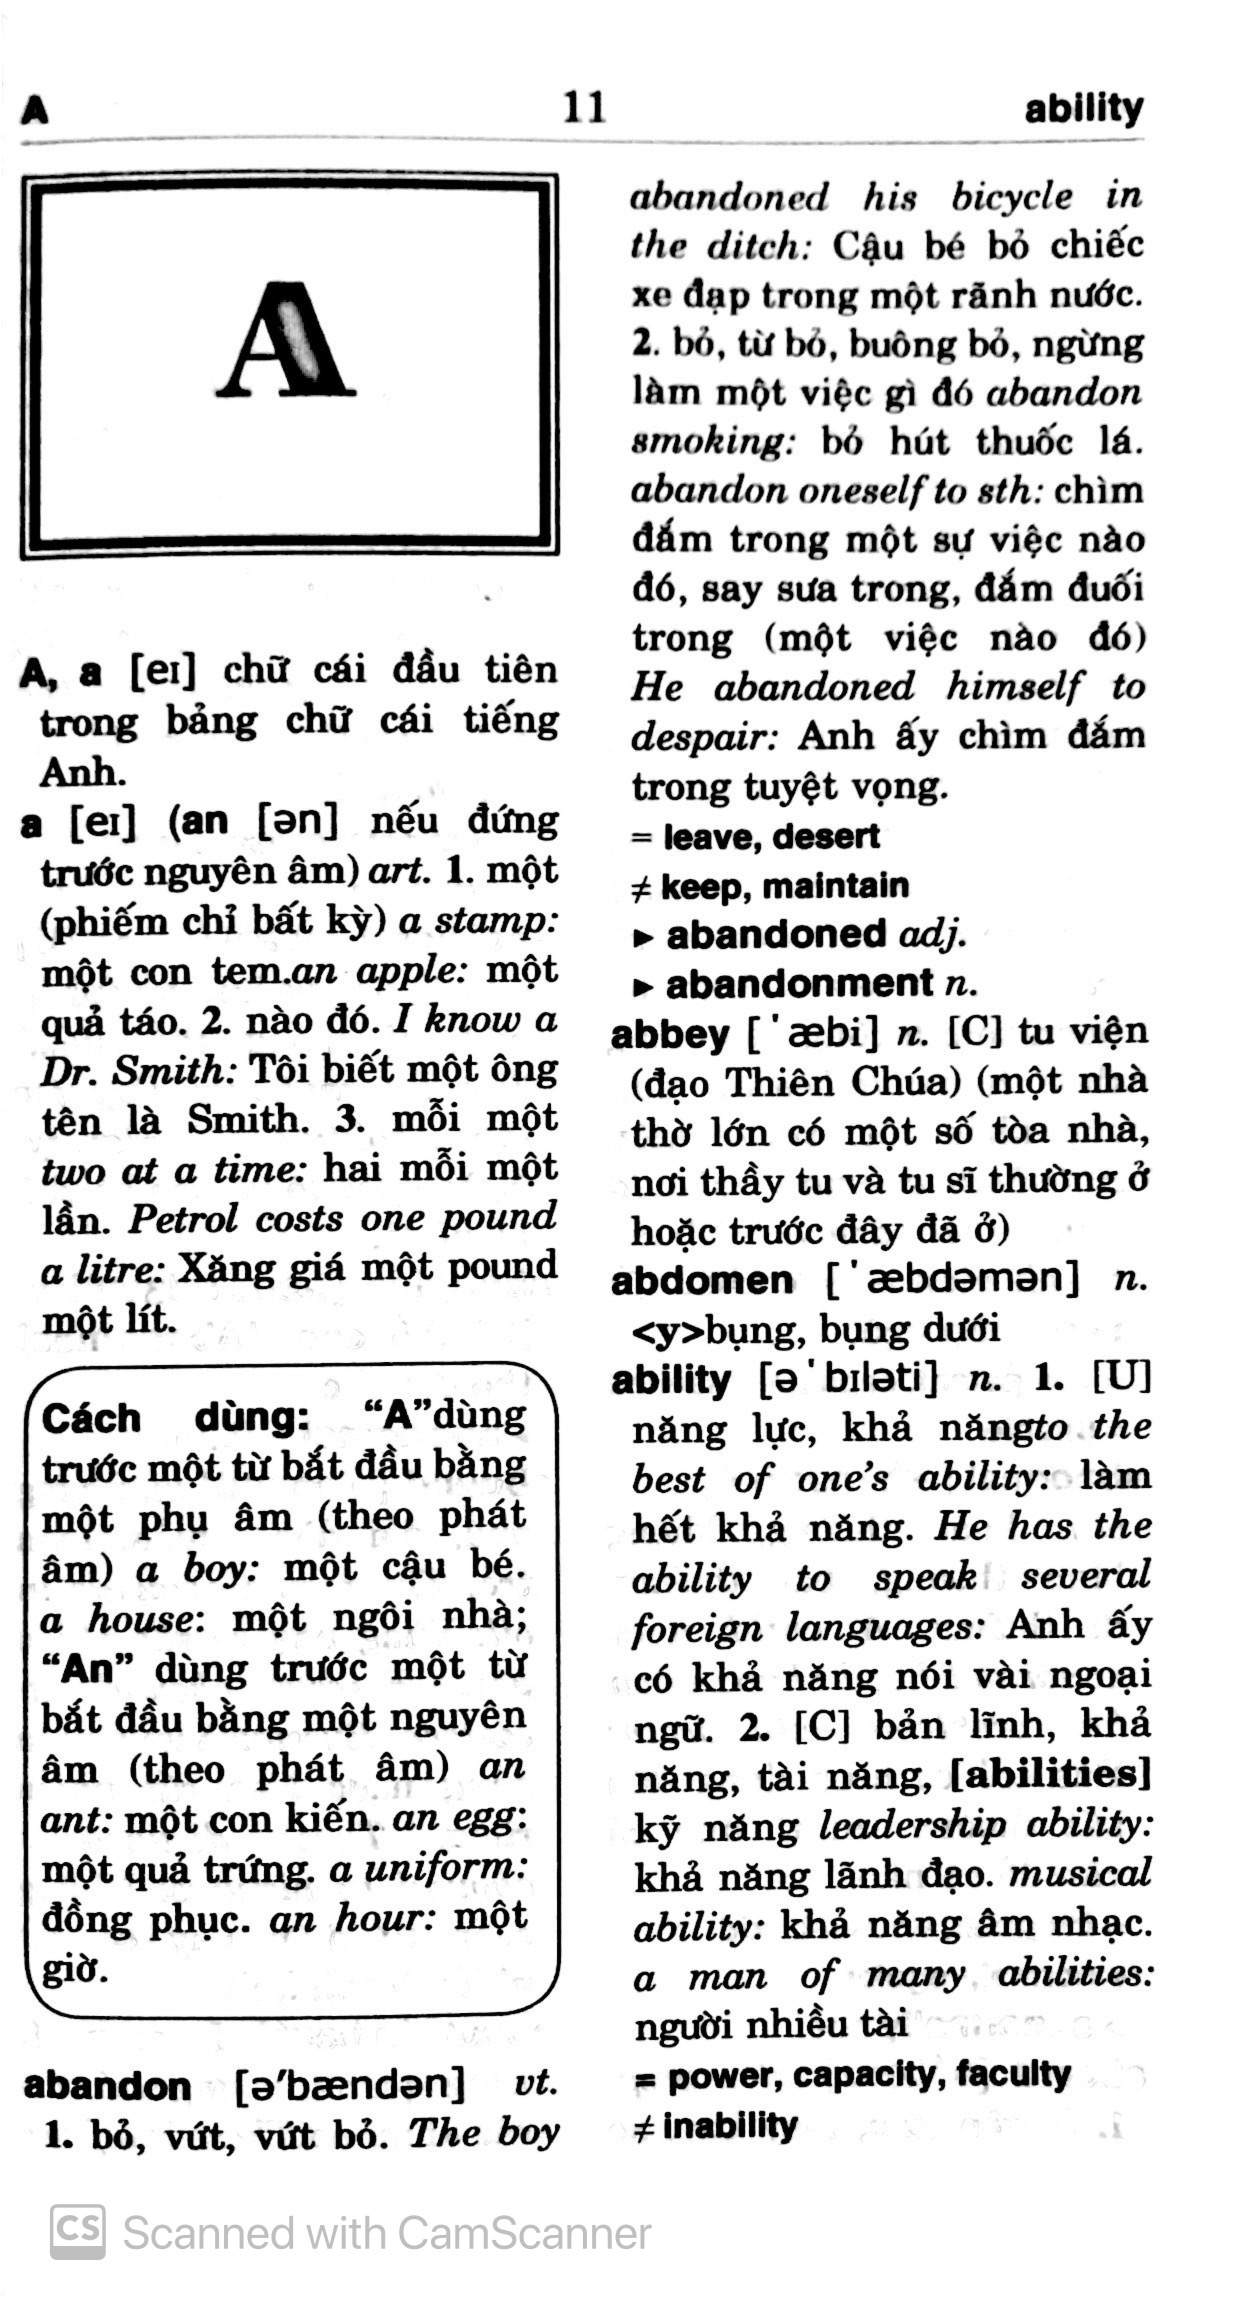 Tân Từ Điển Anh - Việt PDF